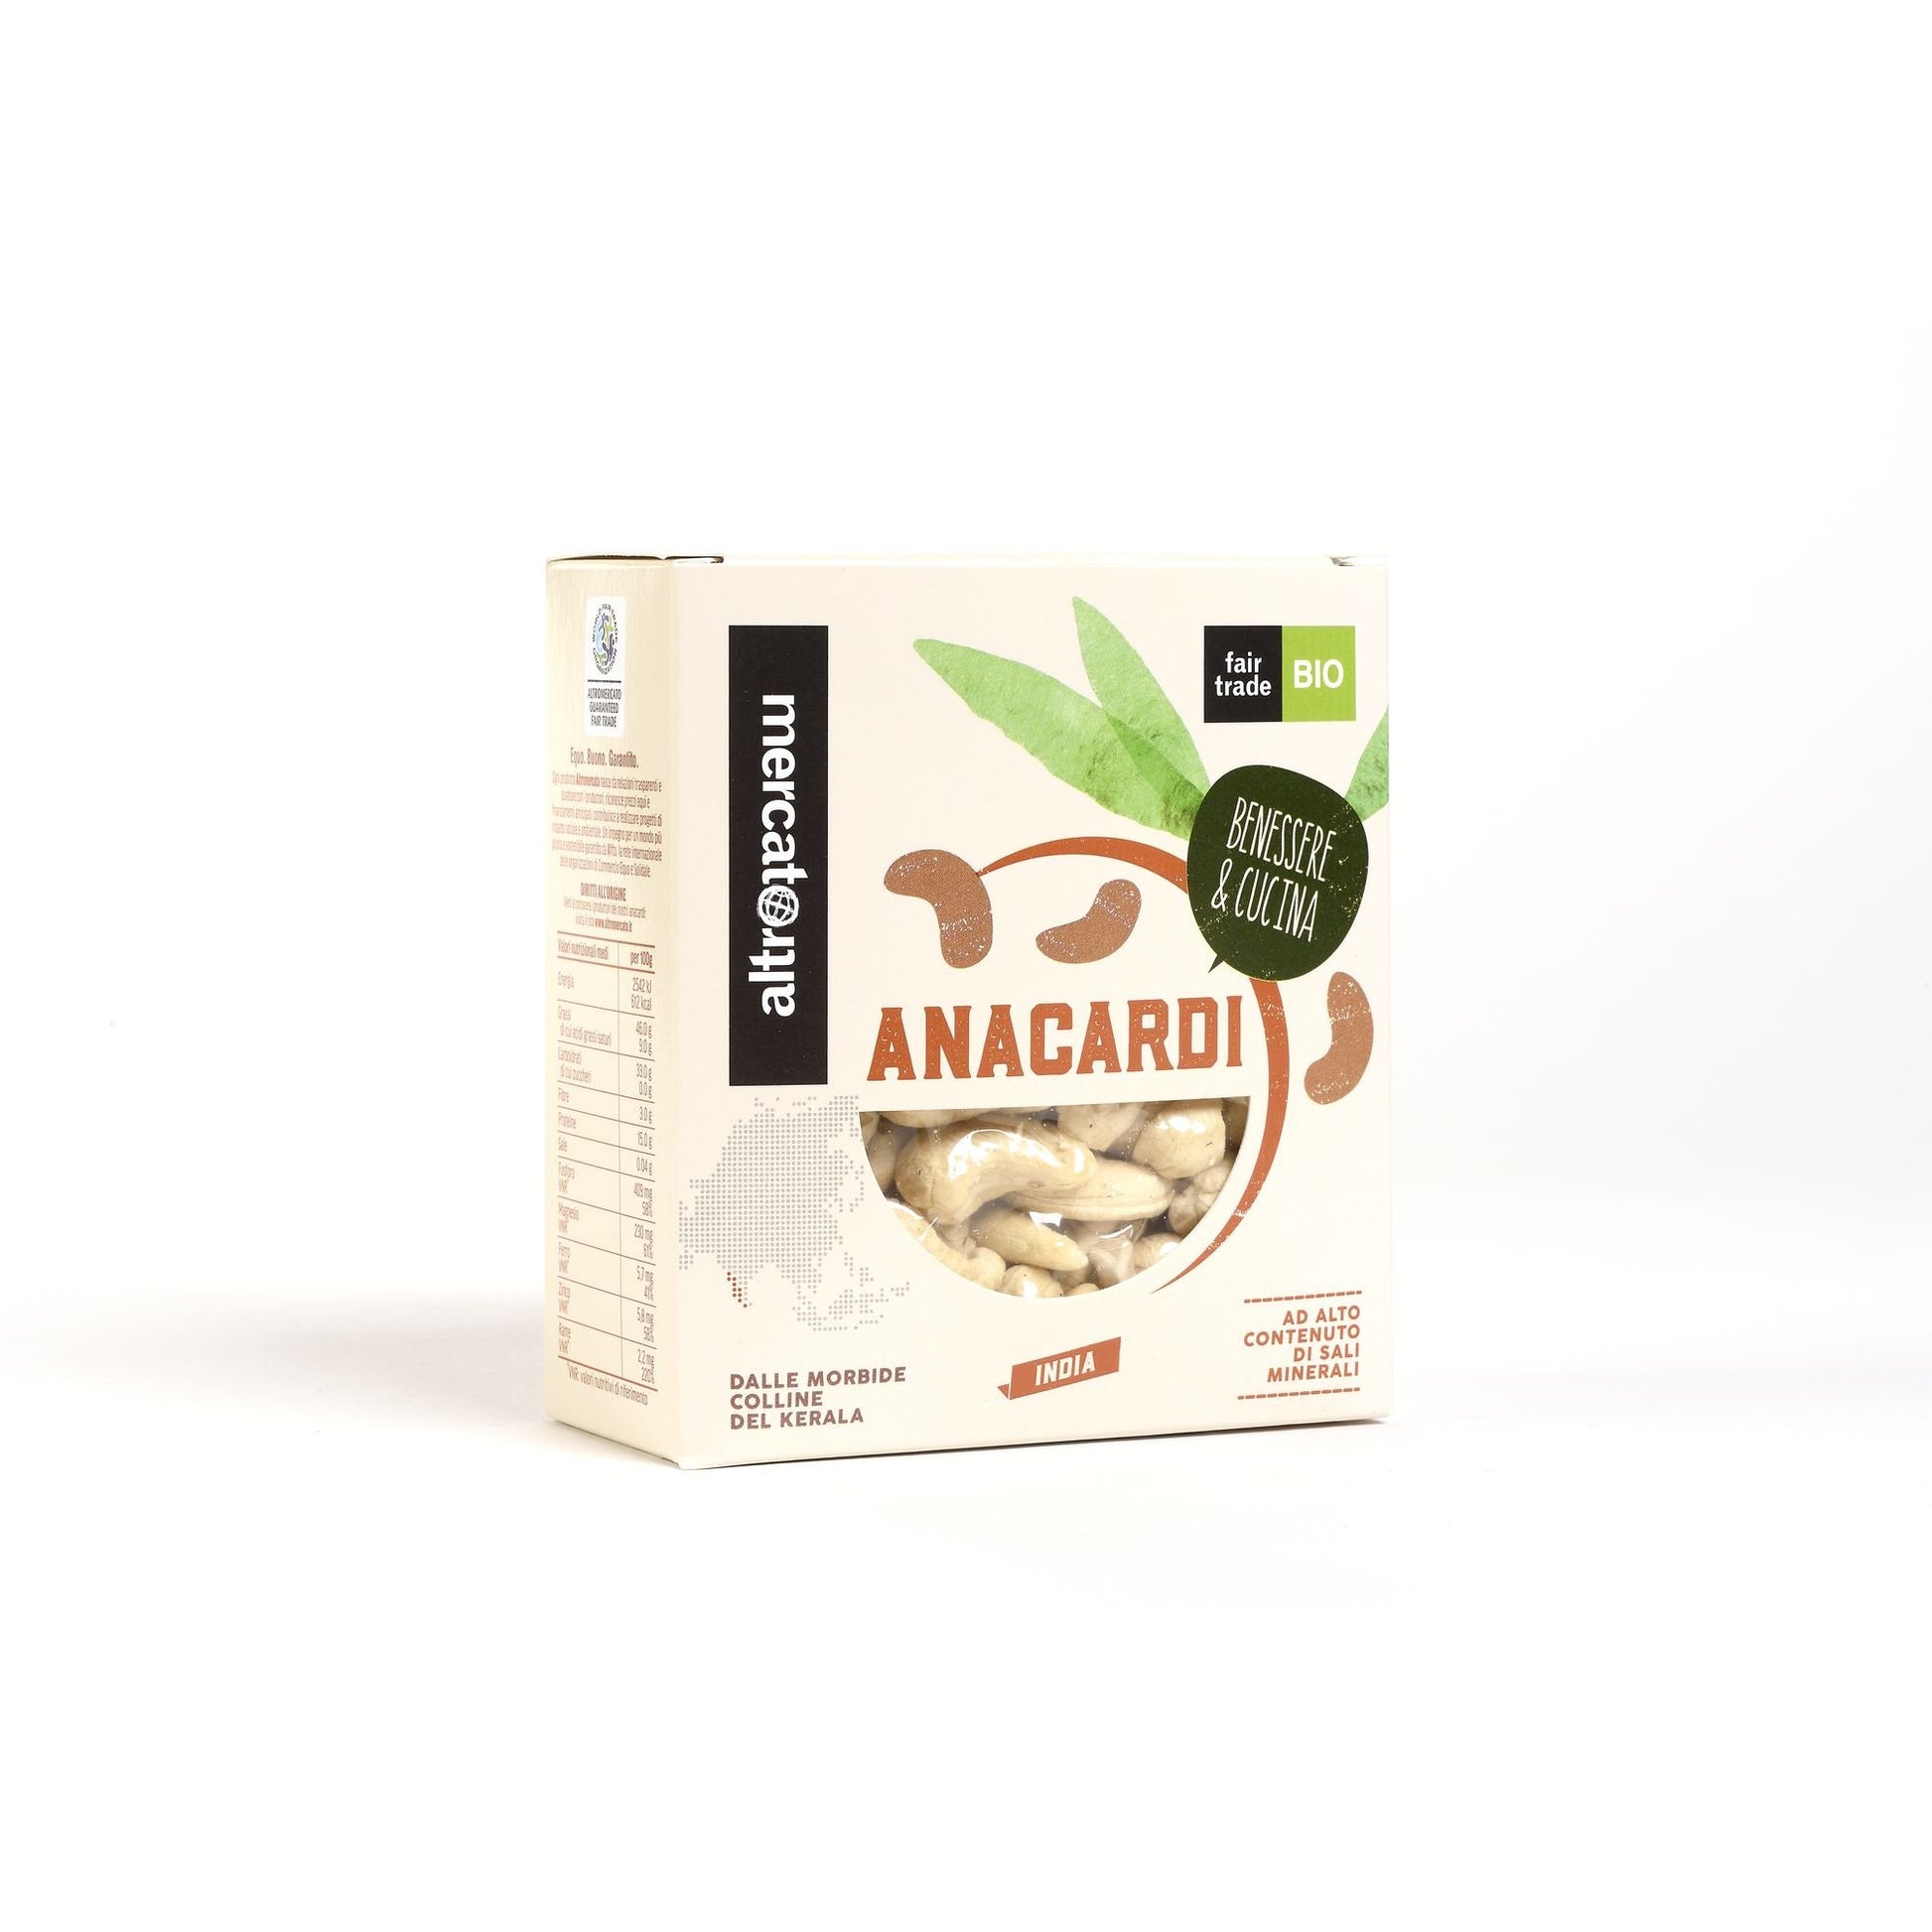 scatola di anacardi bio fair trade altromercato 150 grammi